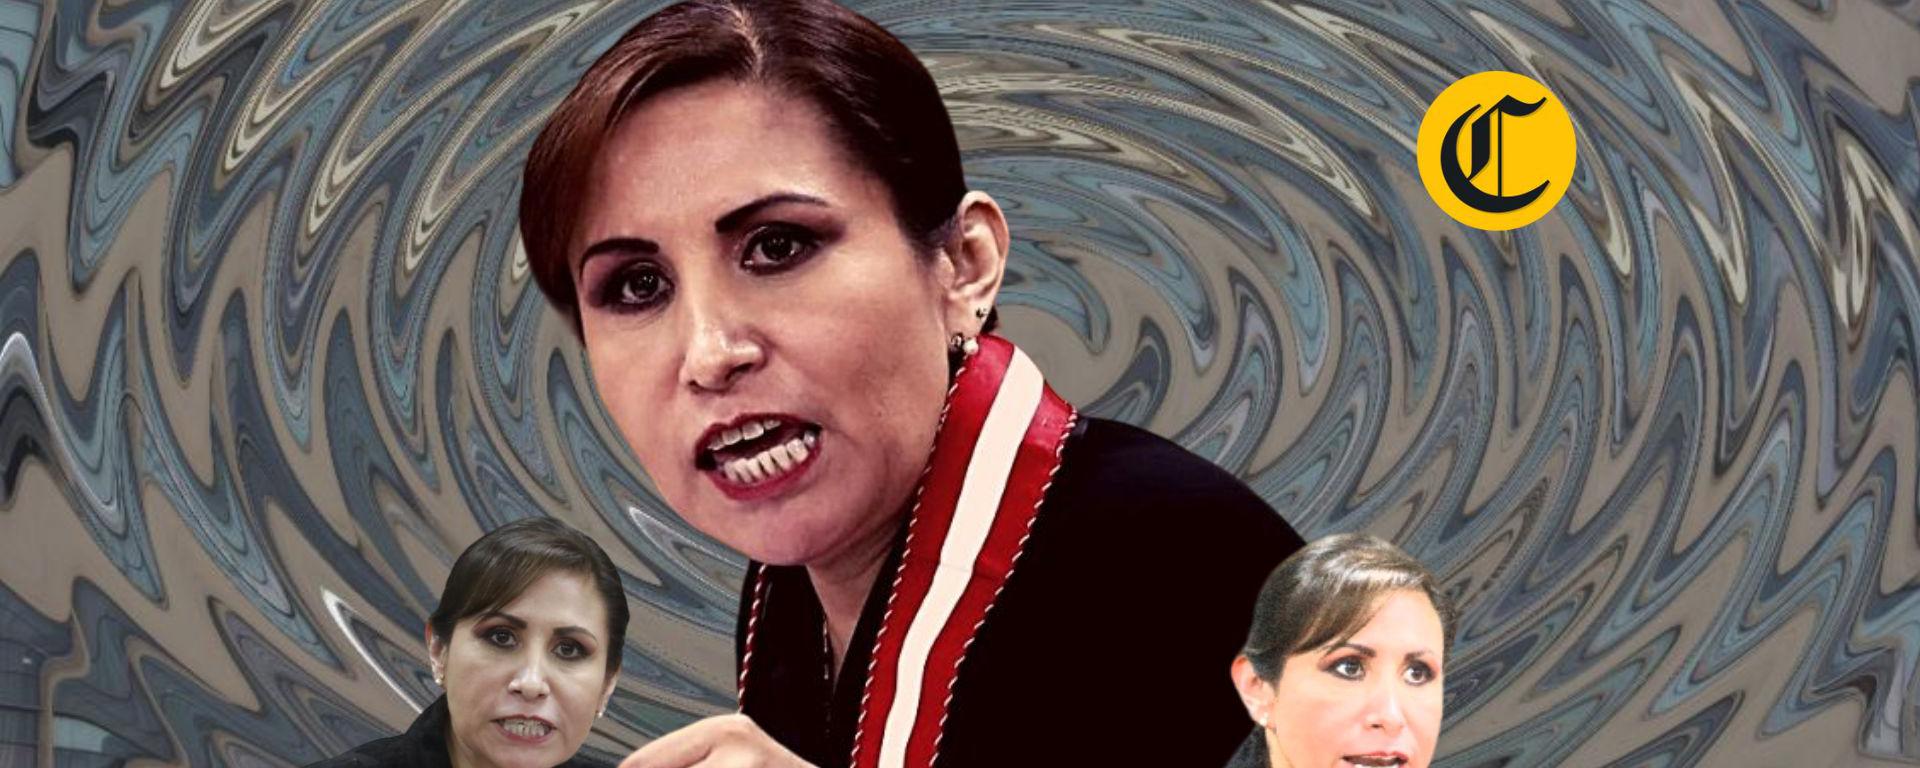 Patricia Benavides: ¿Quiénes son los nuevos personajes implicados por la fiscalía en presunta red de corrupción?